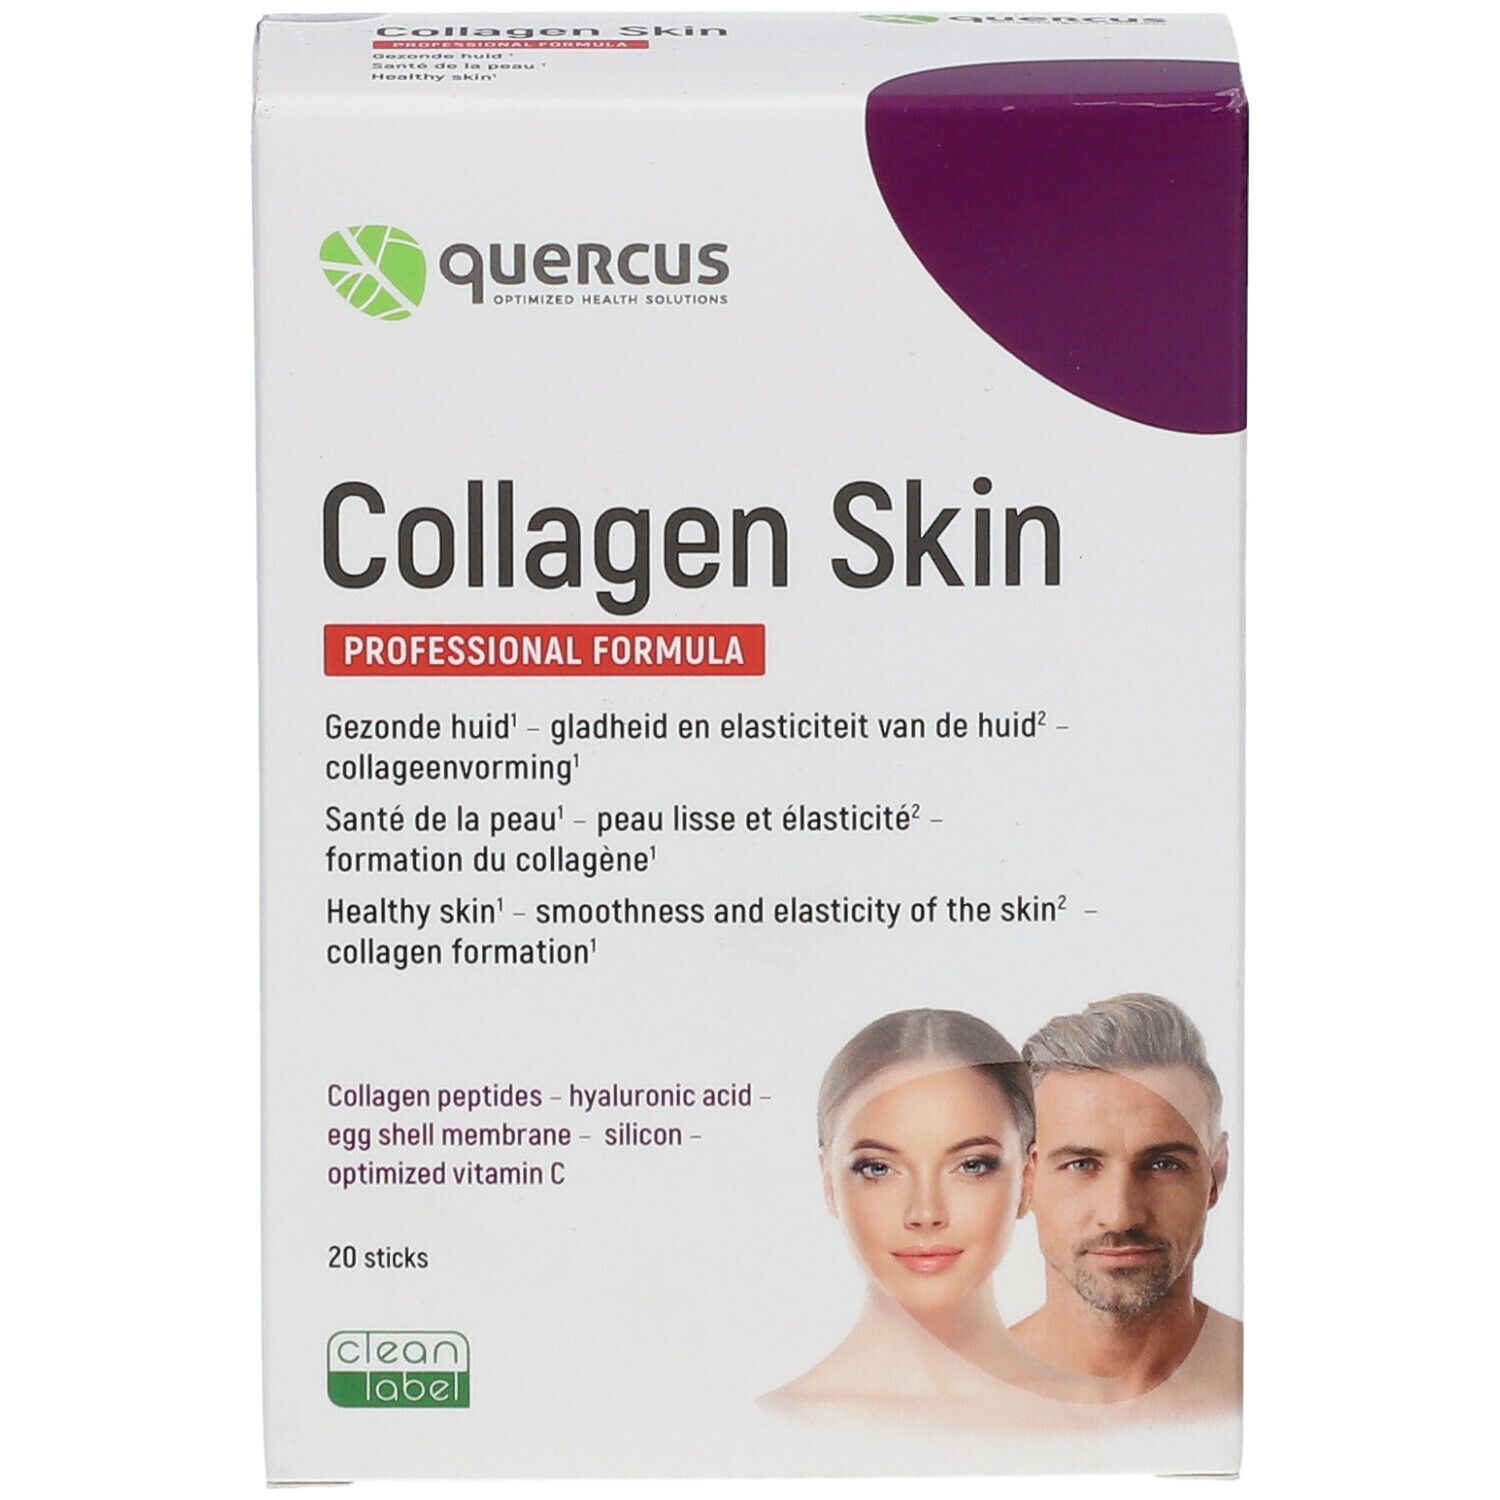 Quercus Collagen Skin Professional Formula